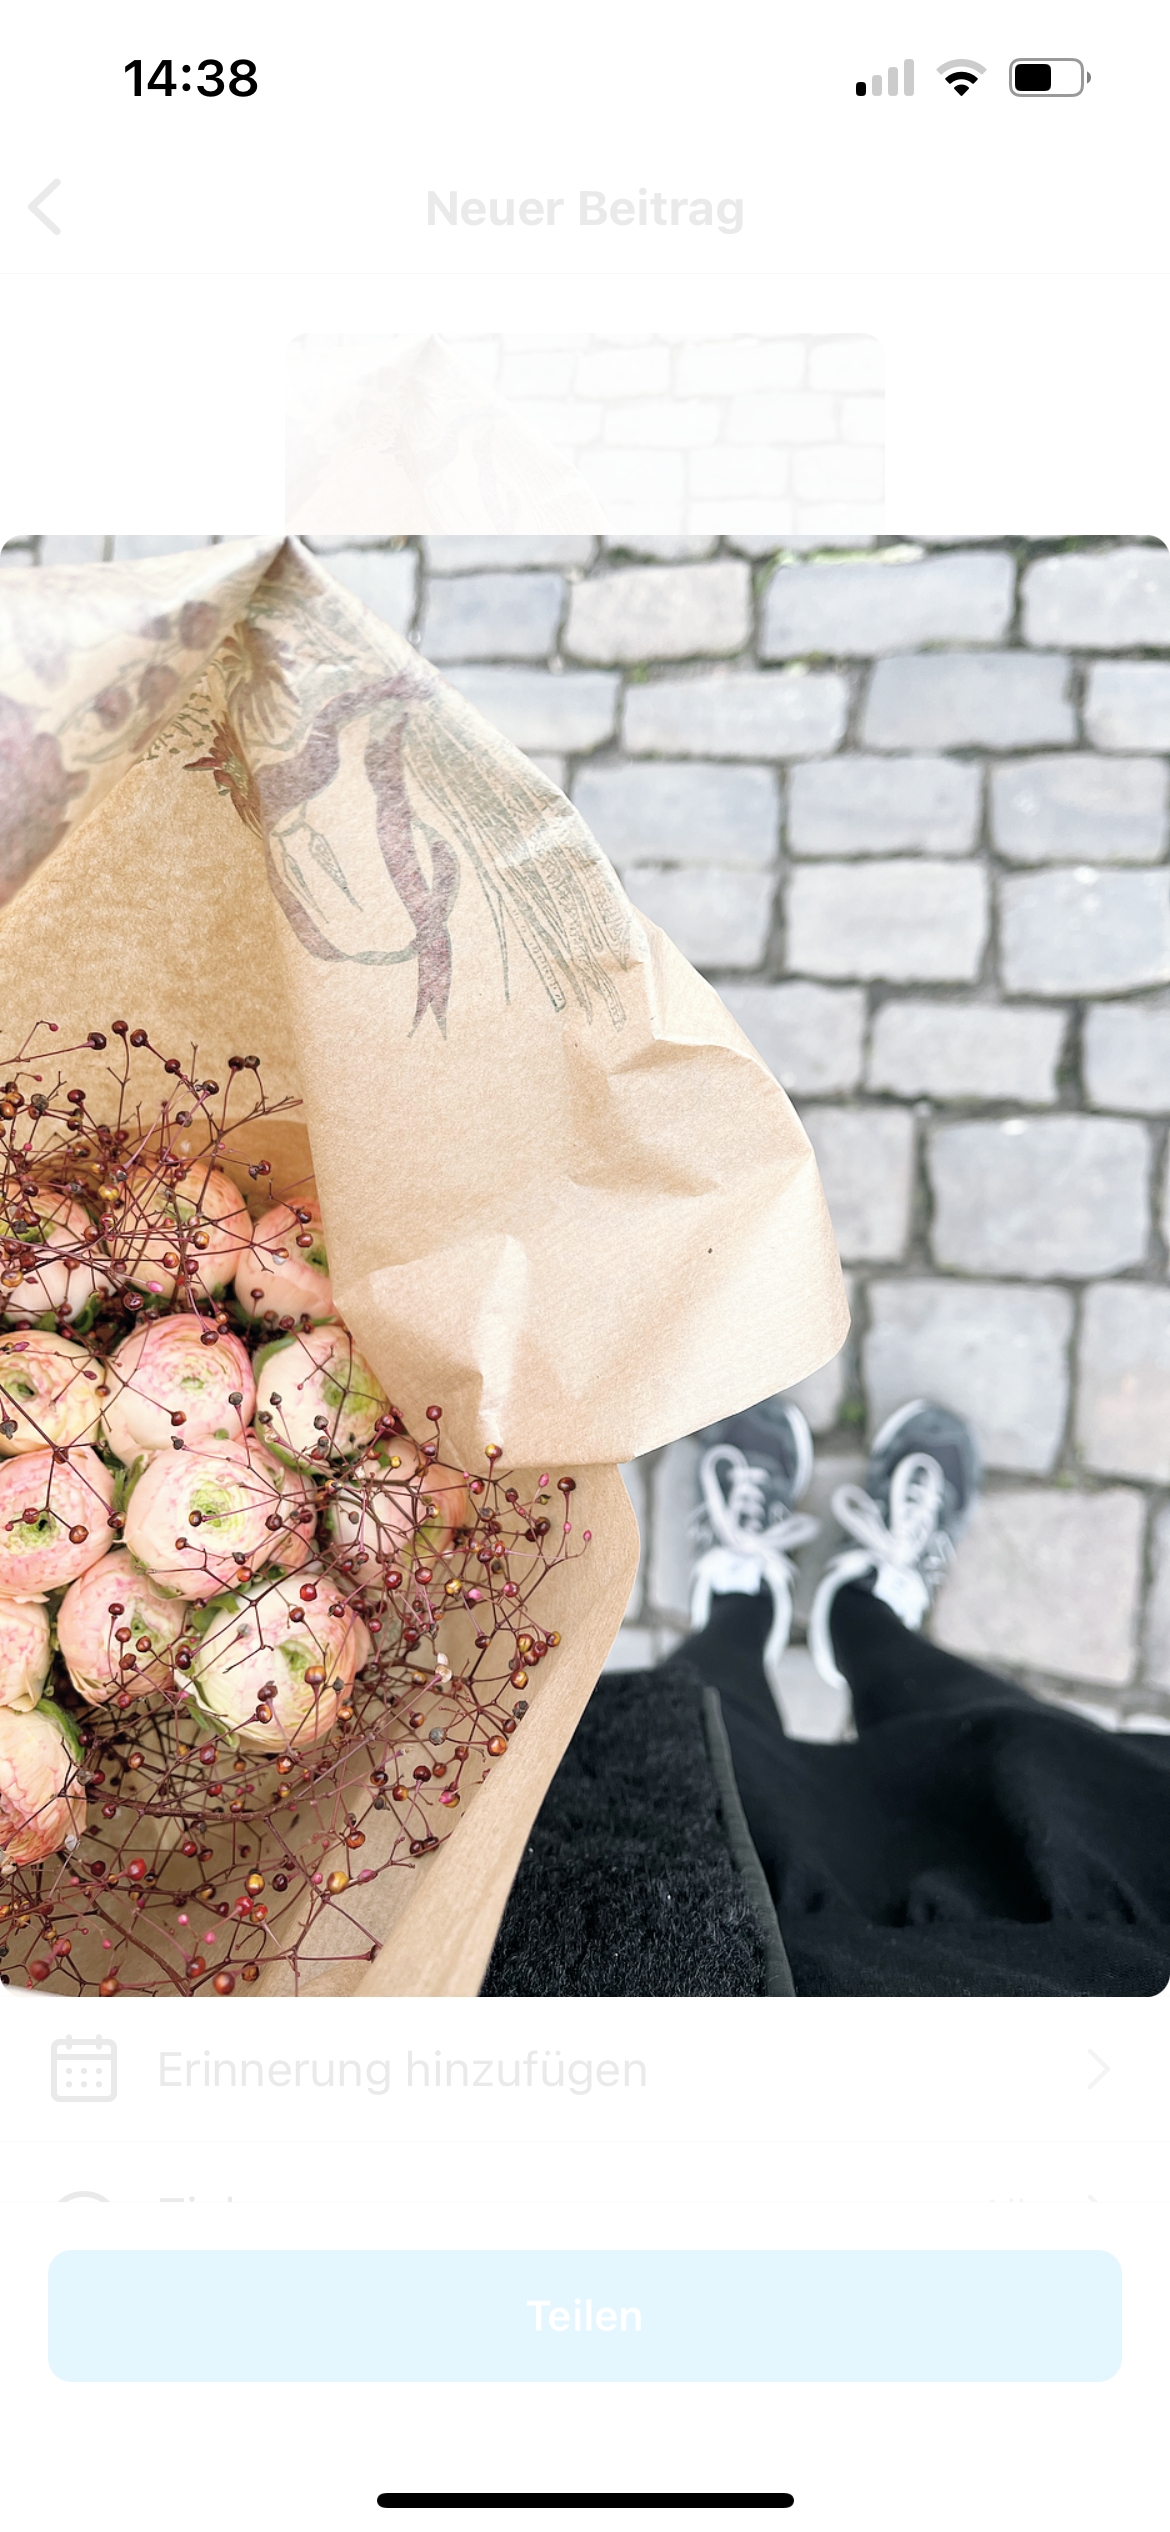 Blumen mag ich sehr und ich kaufe sie am liebsten auf Märkten🤍

#blumen #ranunkeln #frühling #markt